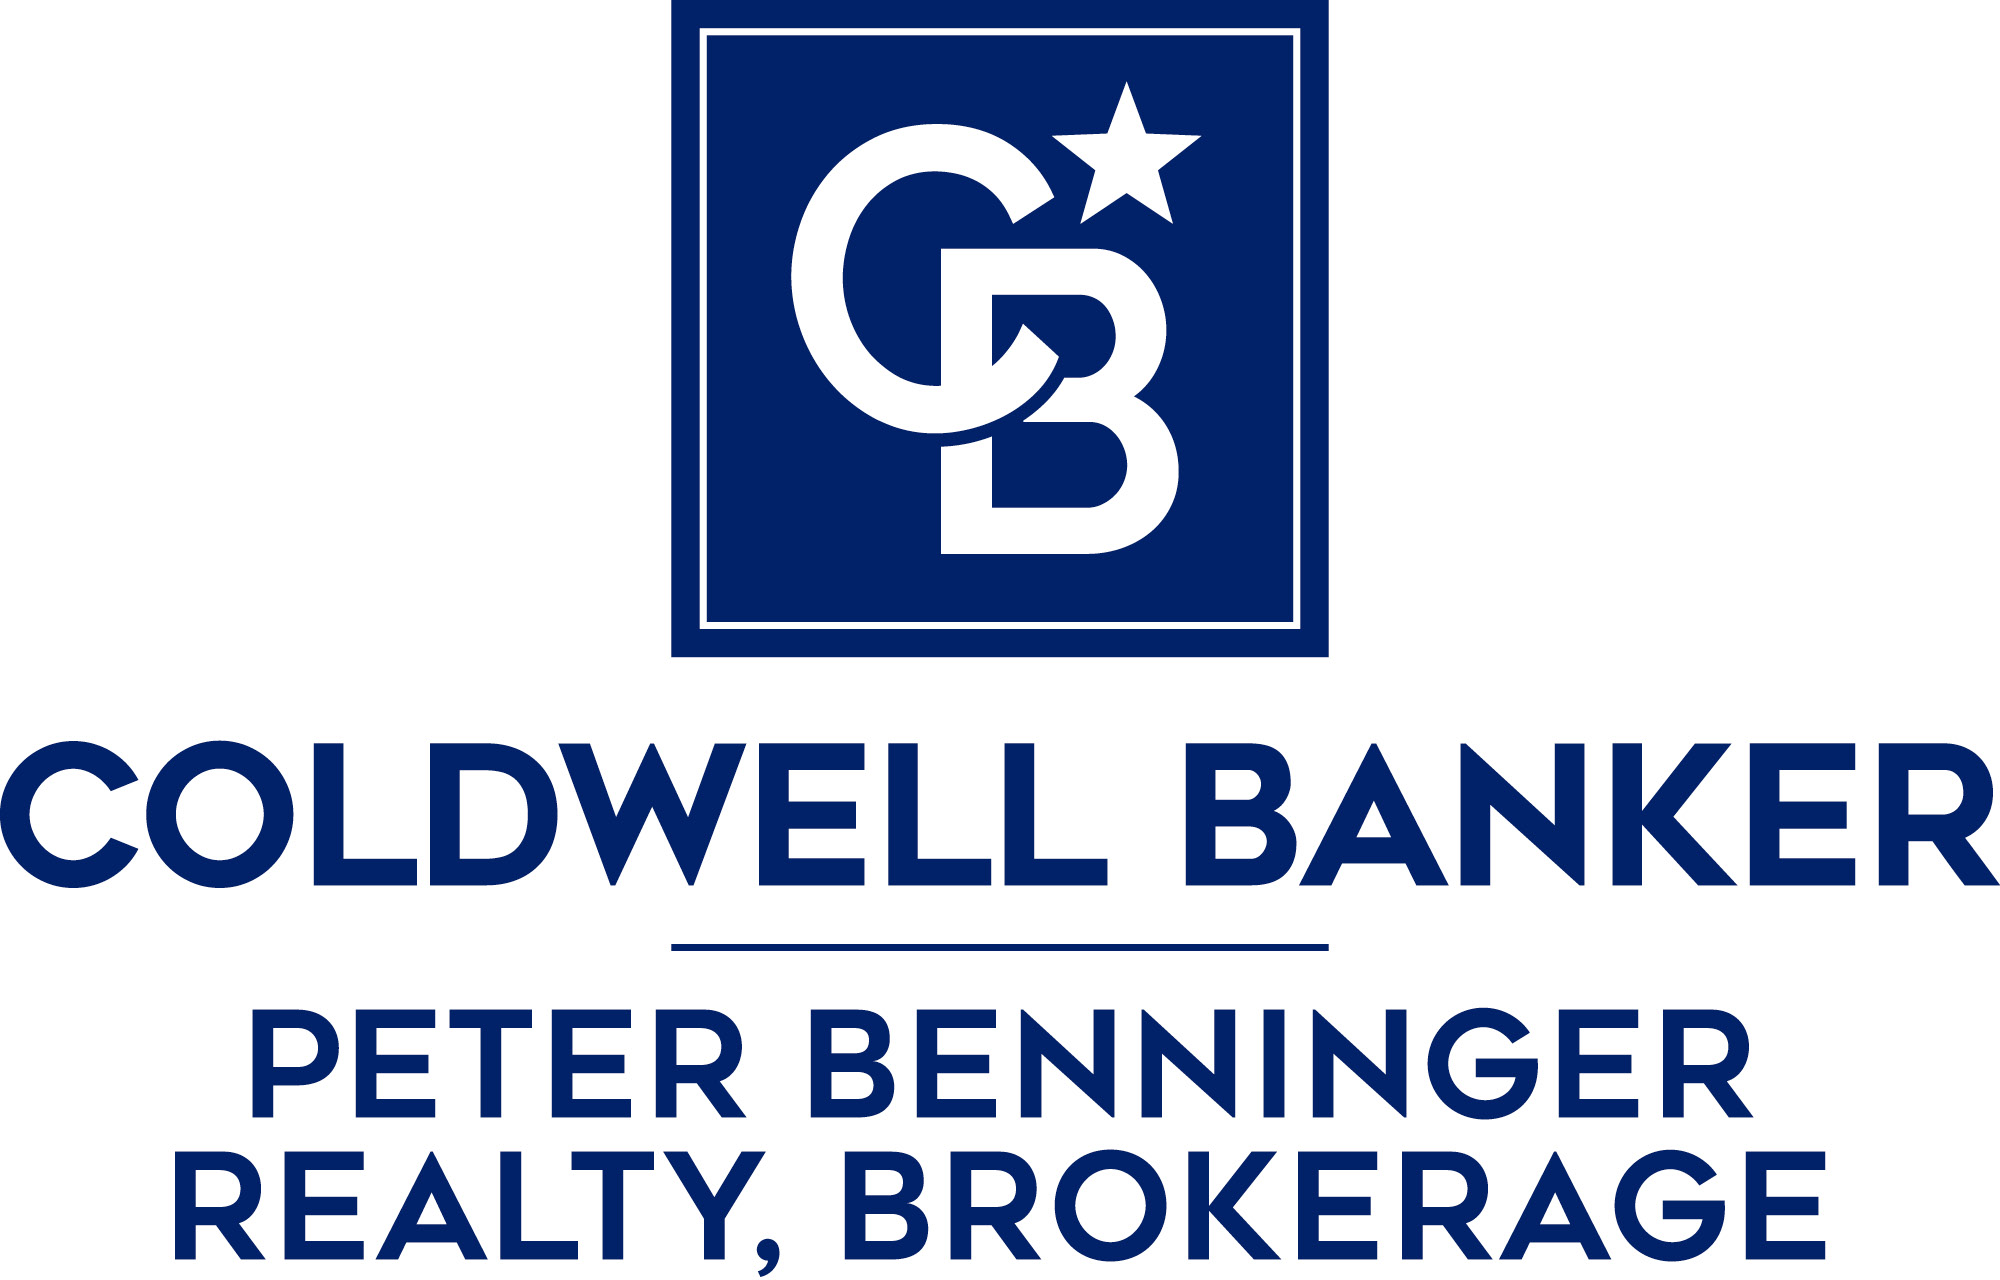 Coldwell Banker Peter Benninger Realty, Brokerage